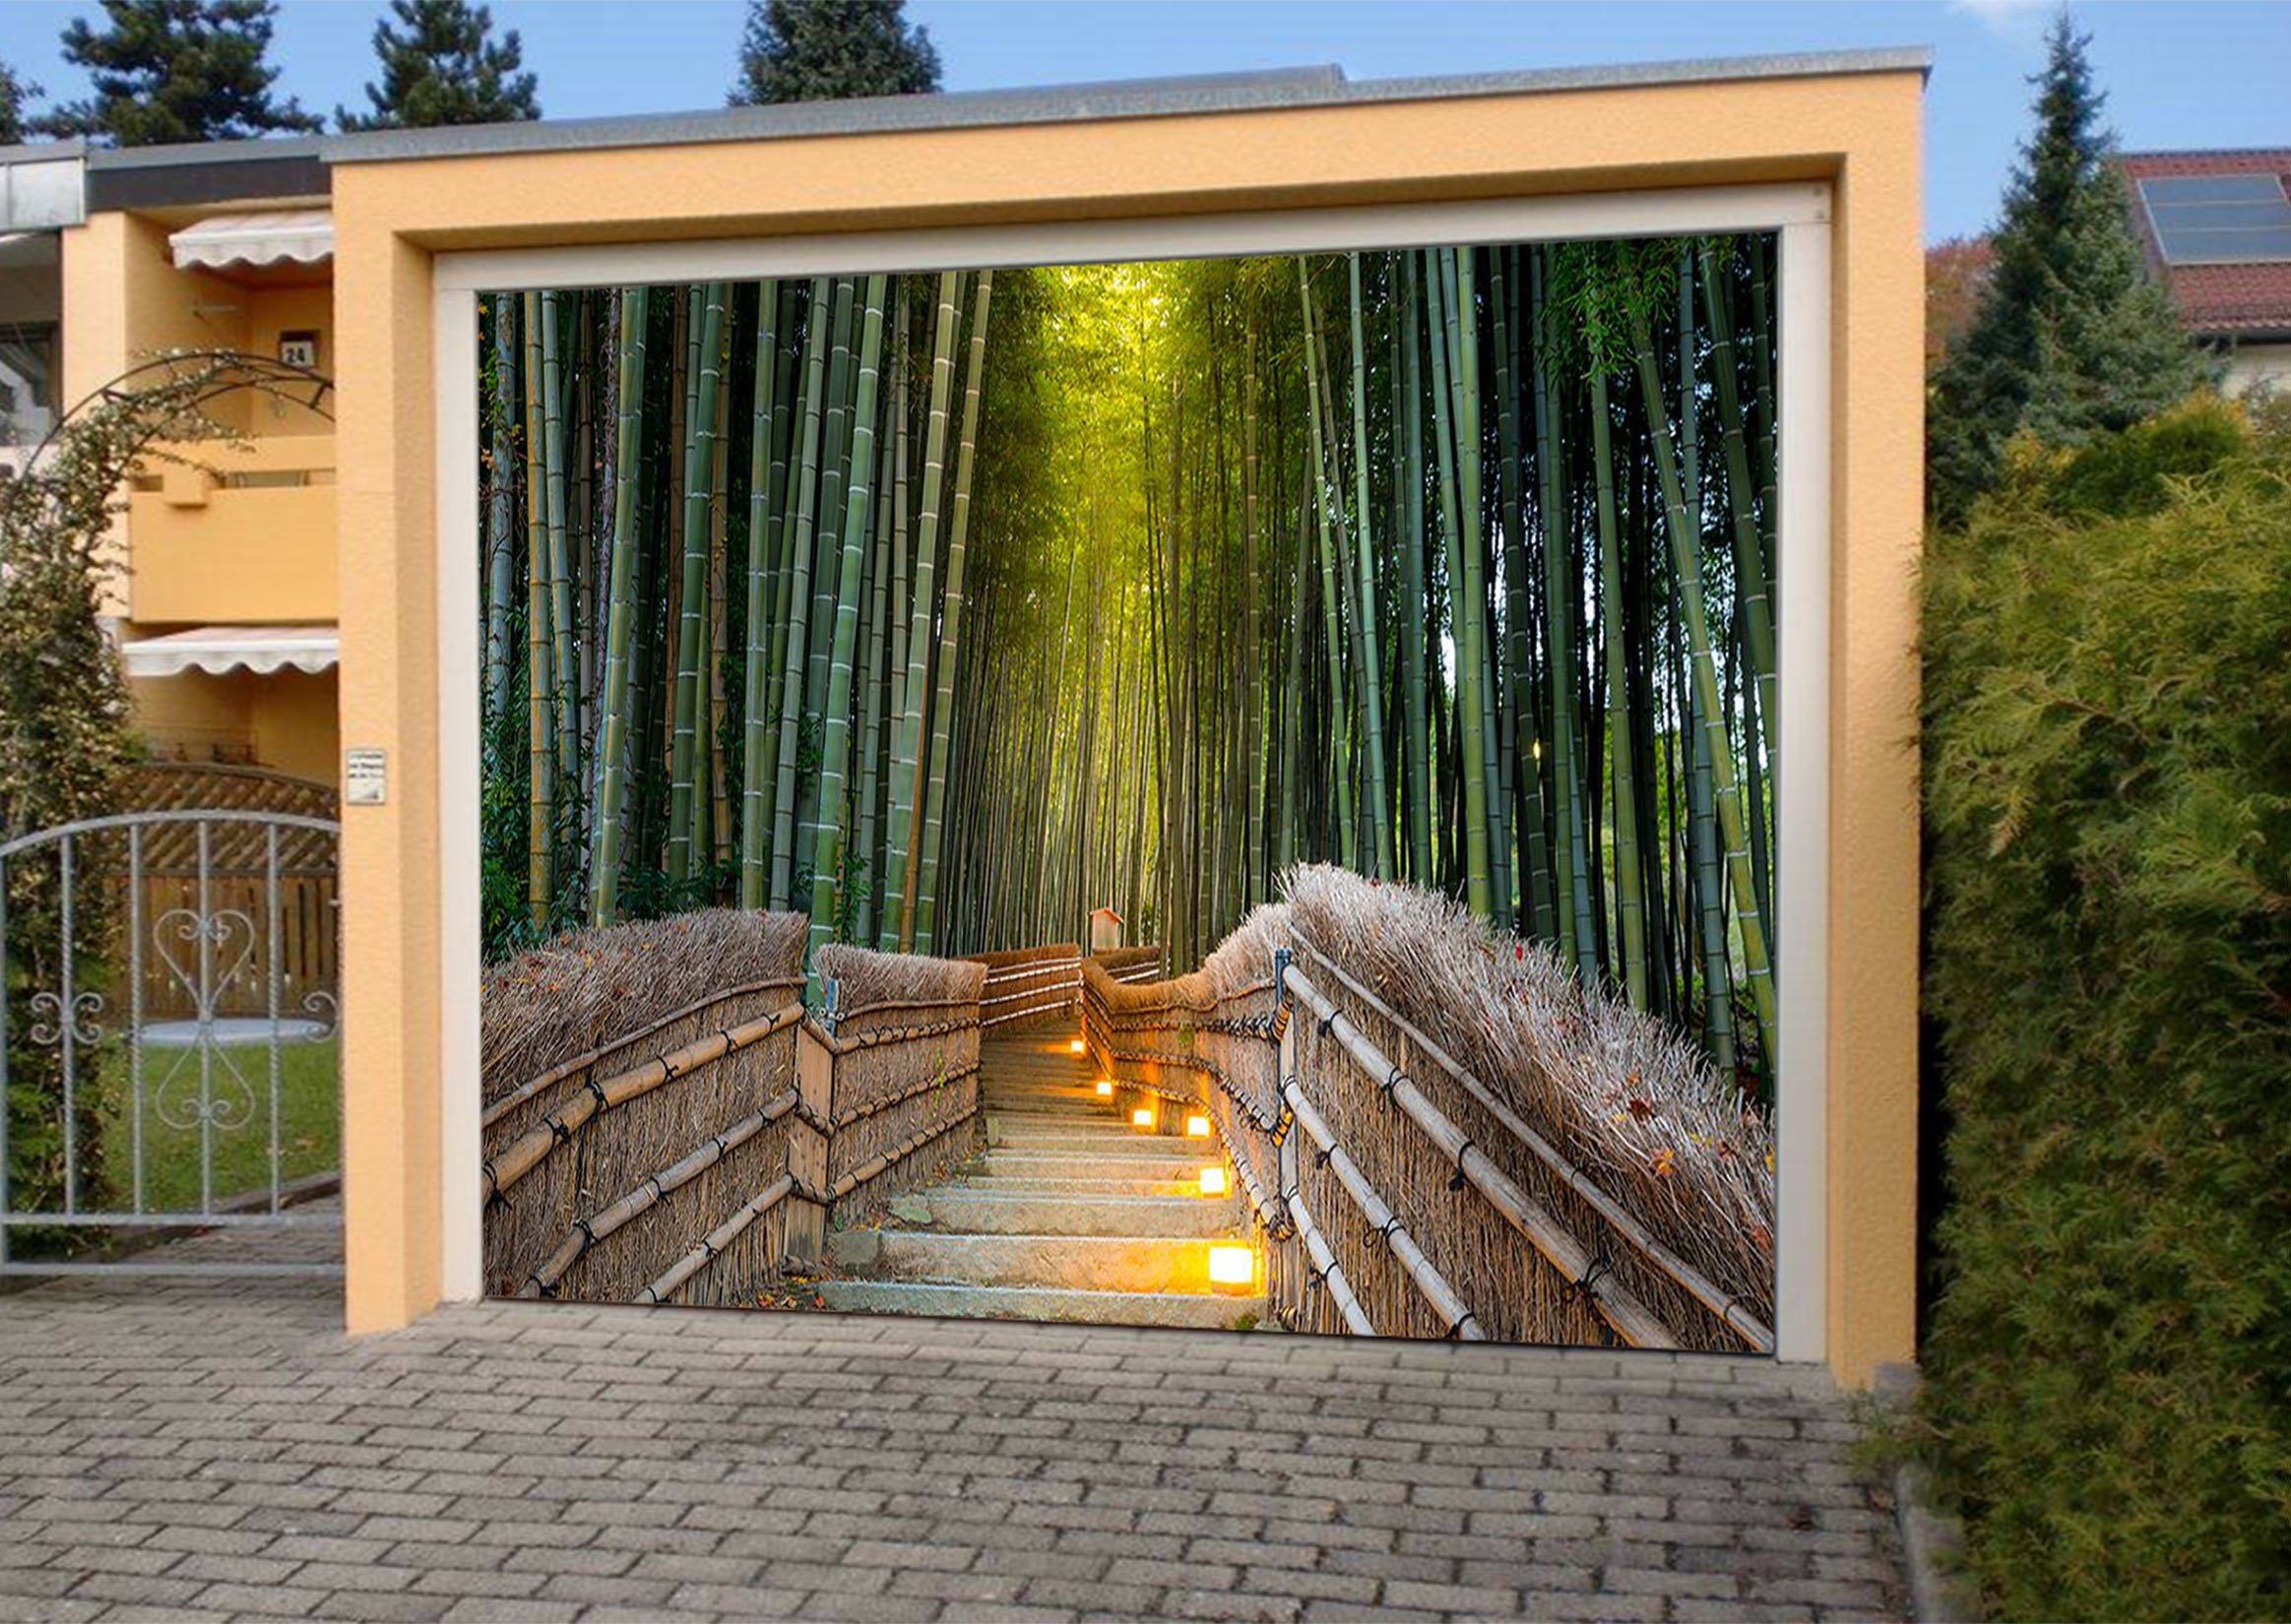 3D Bamboo Forest Stairs 378 Garage Door Mural Wallpaper AJ Wallpaper 